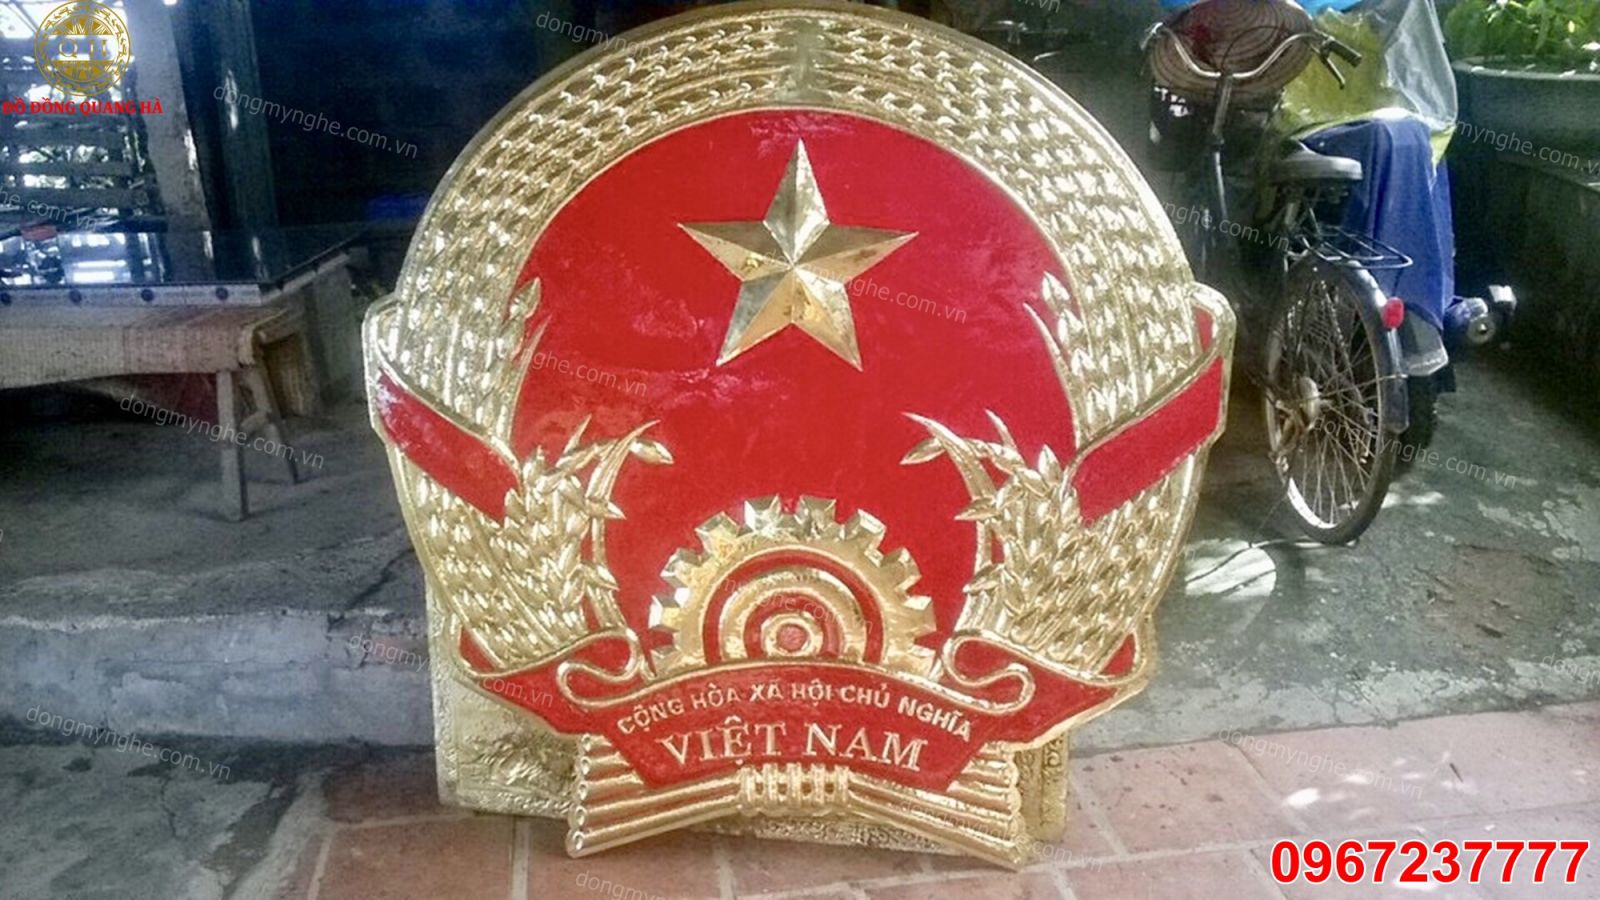 Đồng Quốc huy Việt Nam - biểu tượng quốc gia đầy thiêng liêng và ý nghĩa. Bạn muốn tìm hiểu thêm về đồng quốc huy Việt Nam và ý nghĩa của nó? Hãy xem những hình ảnh liên quan đến từ khóa này để khám phá sự cao quý và tinh hoa của biểu tượng quốc gia.